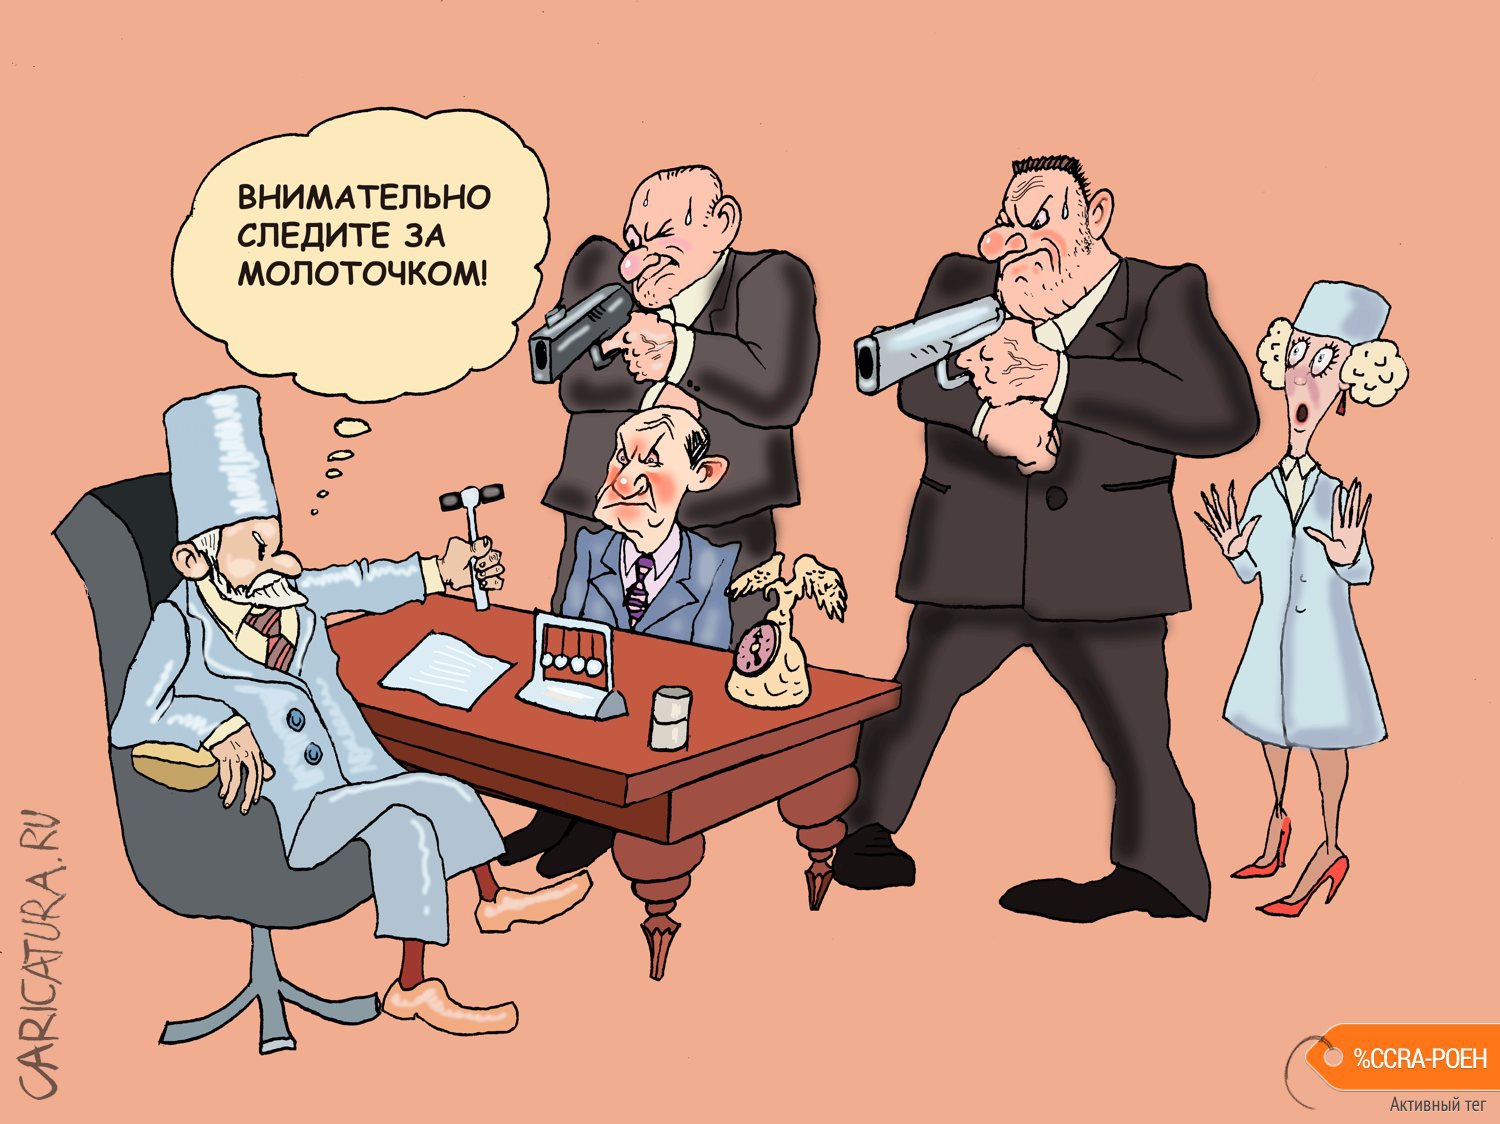 Карикатура "На приеме у невролога", Булат Ирсаев